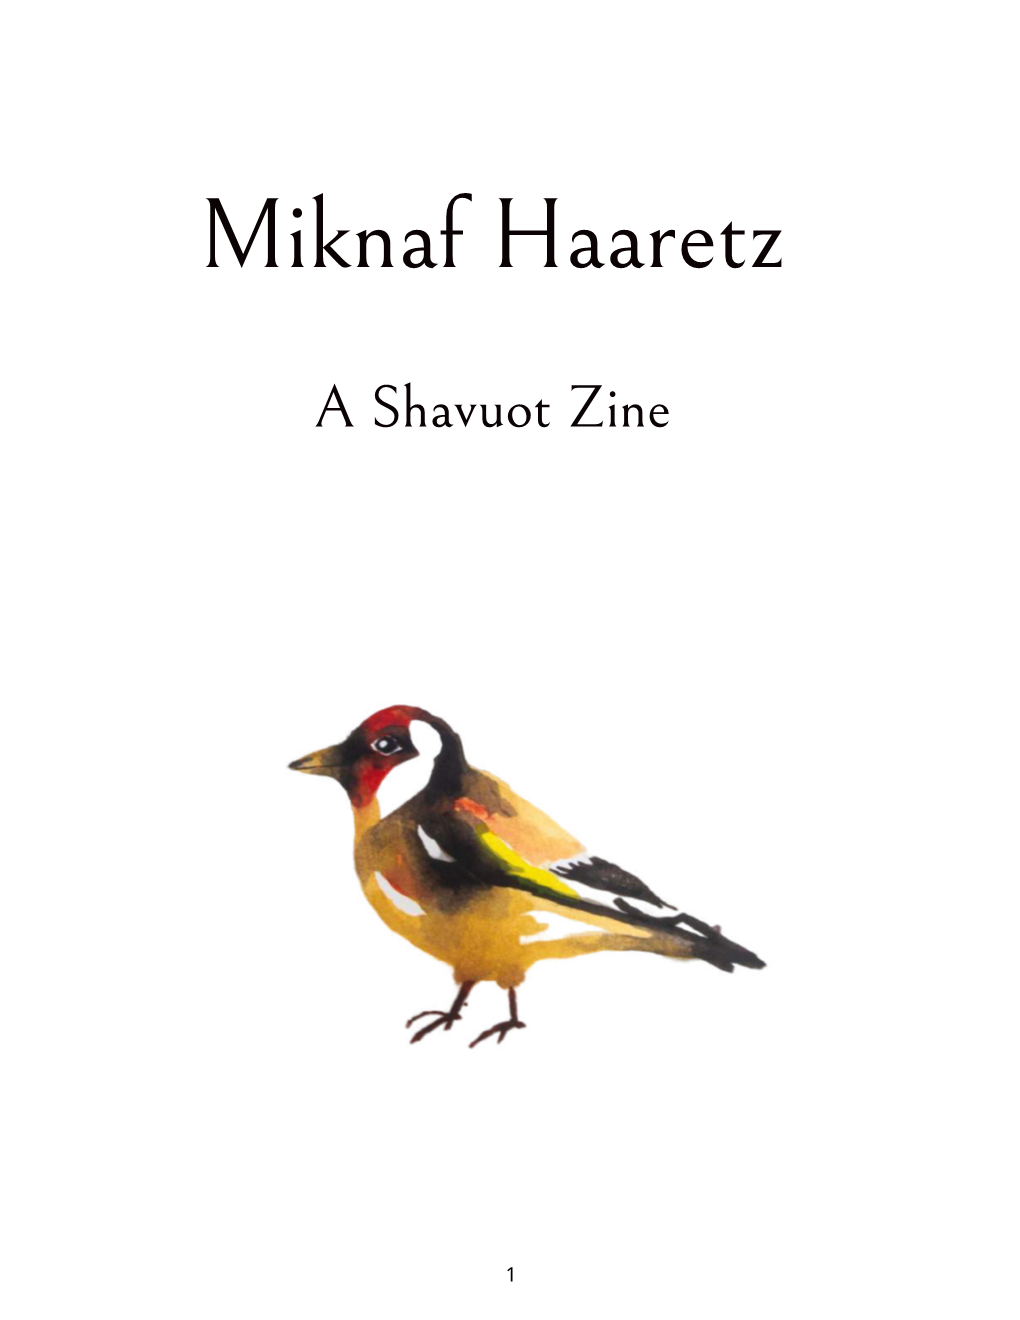 Miknaf Haaretz: a Shavuot Zine